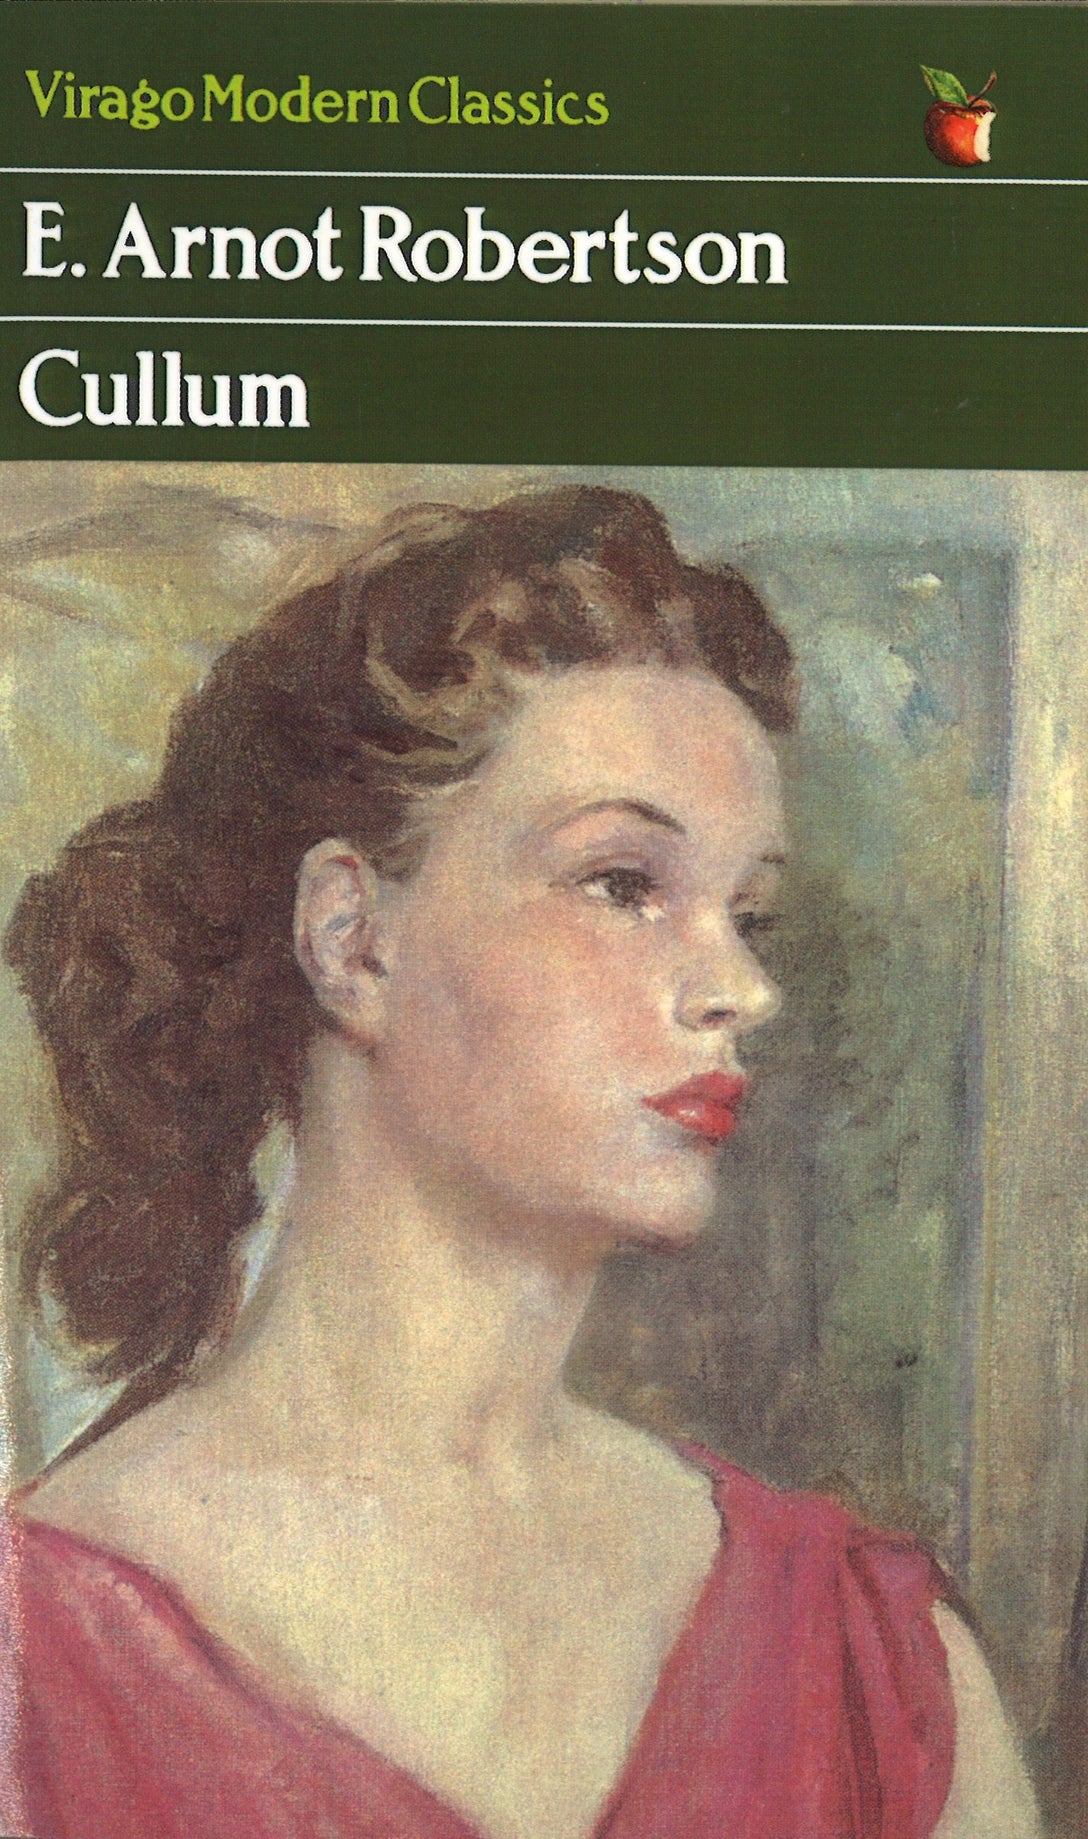 Cullum by E. Arnot Robertson